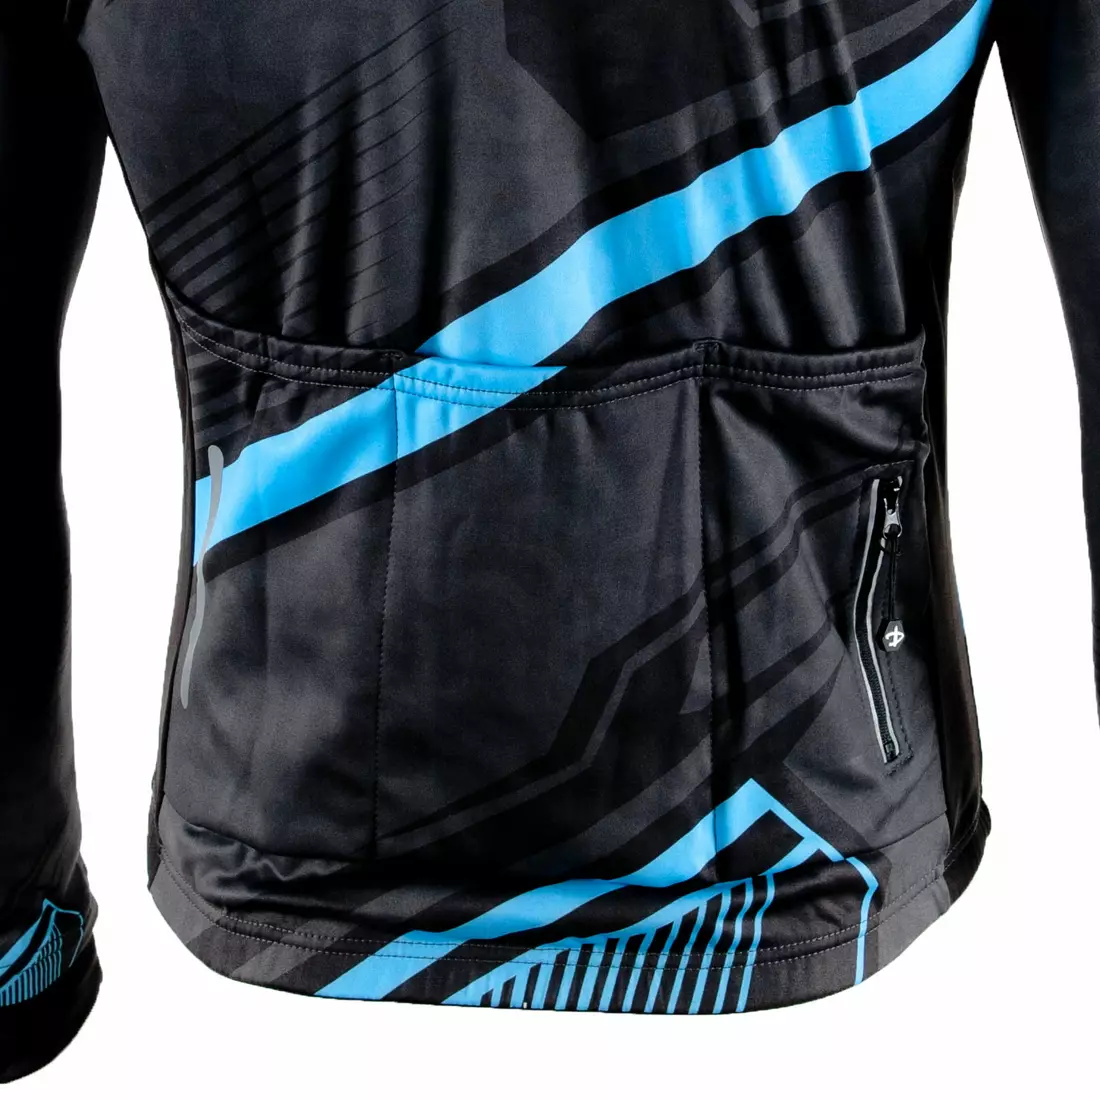 DEKO MNK-001-09 men's long sleeve cycling jersey, blue